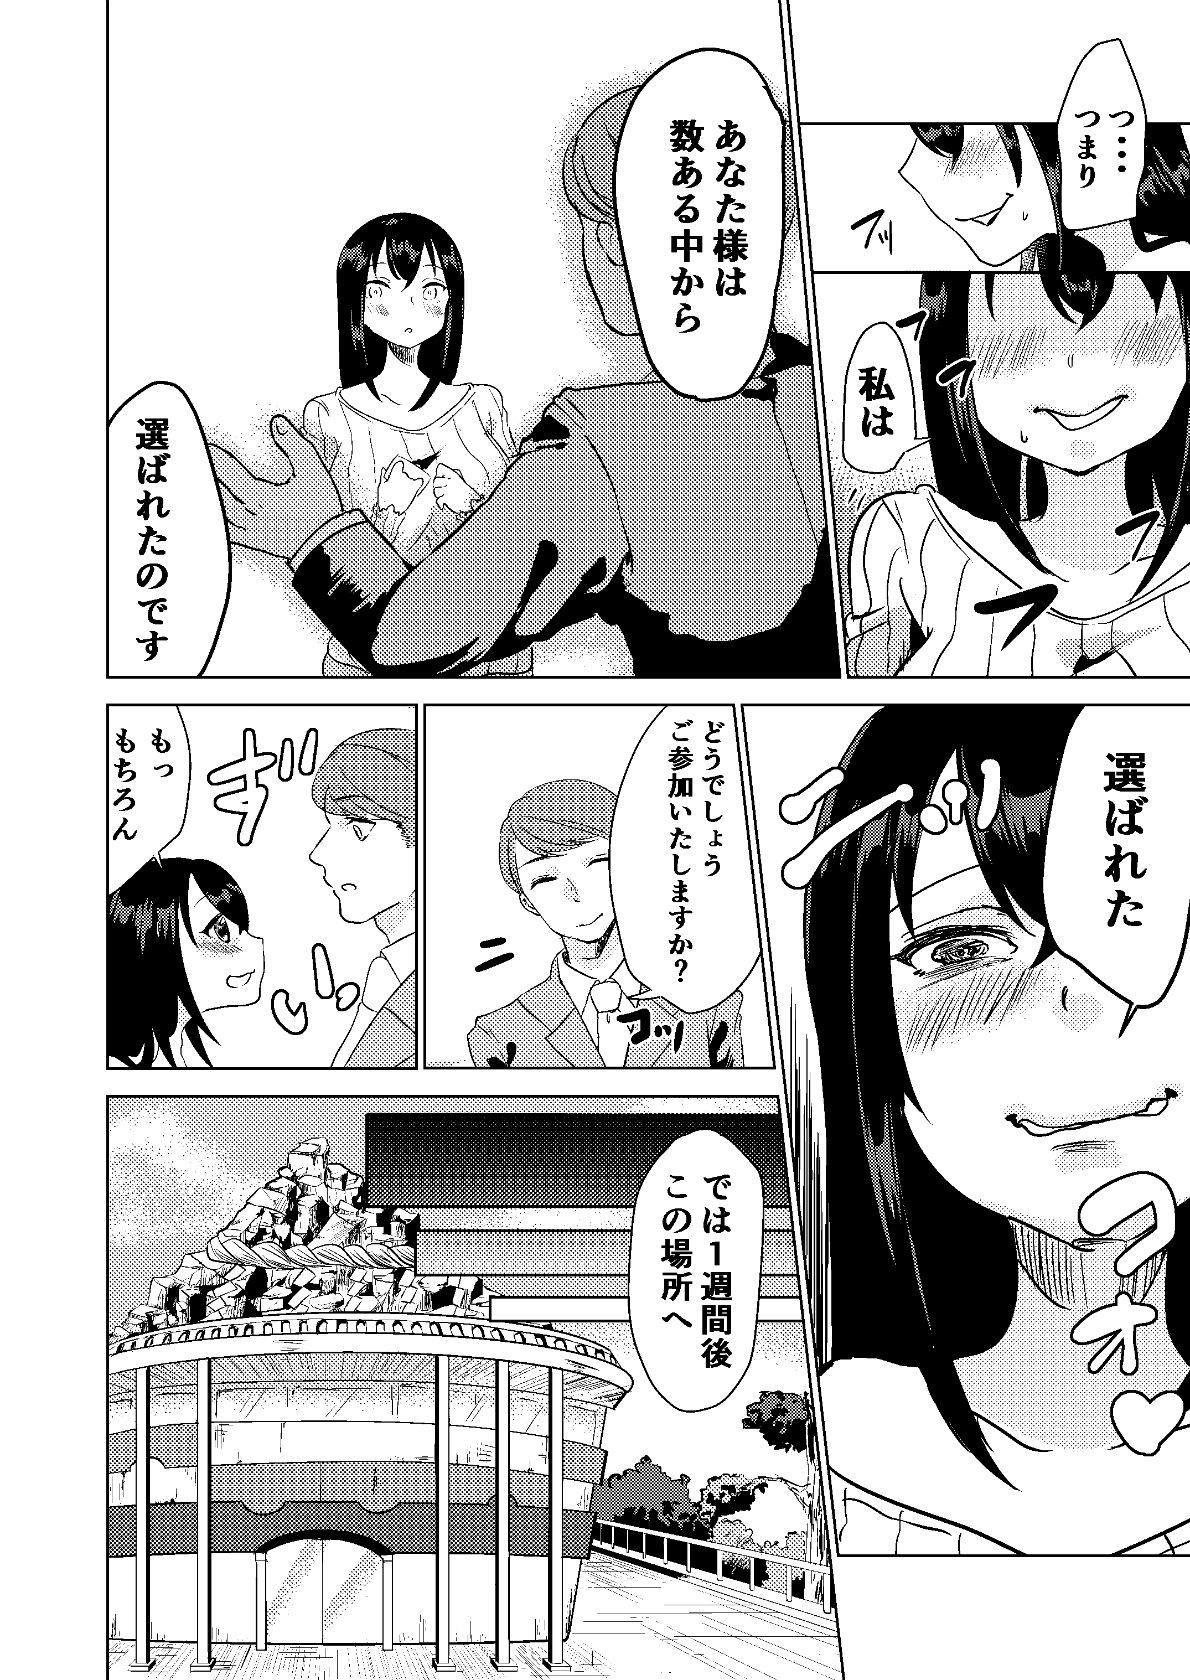 Spreading Kyou kara Watashi wa Anata ni Naru. - Original Orgasmo - Page 6